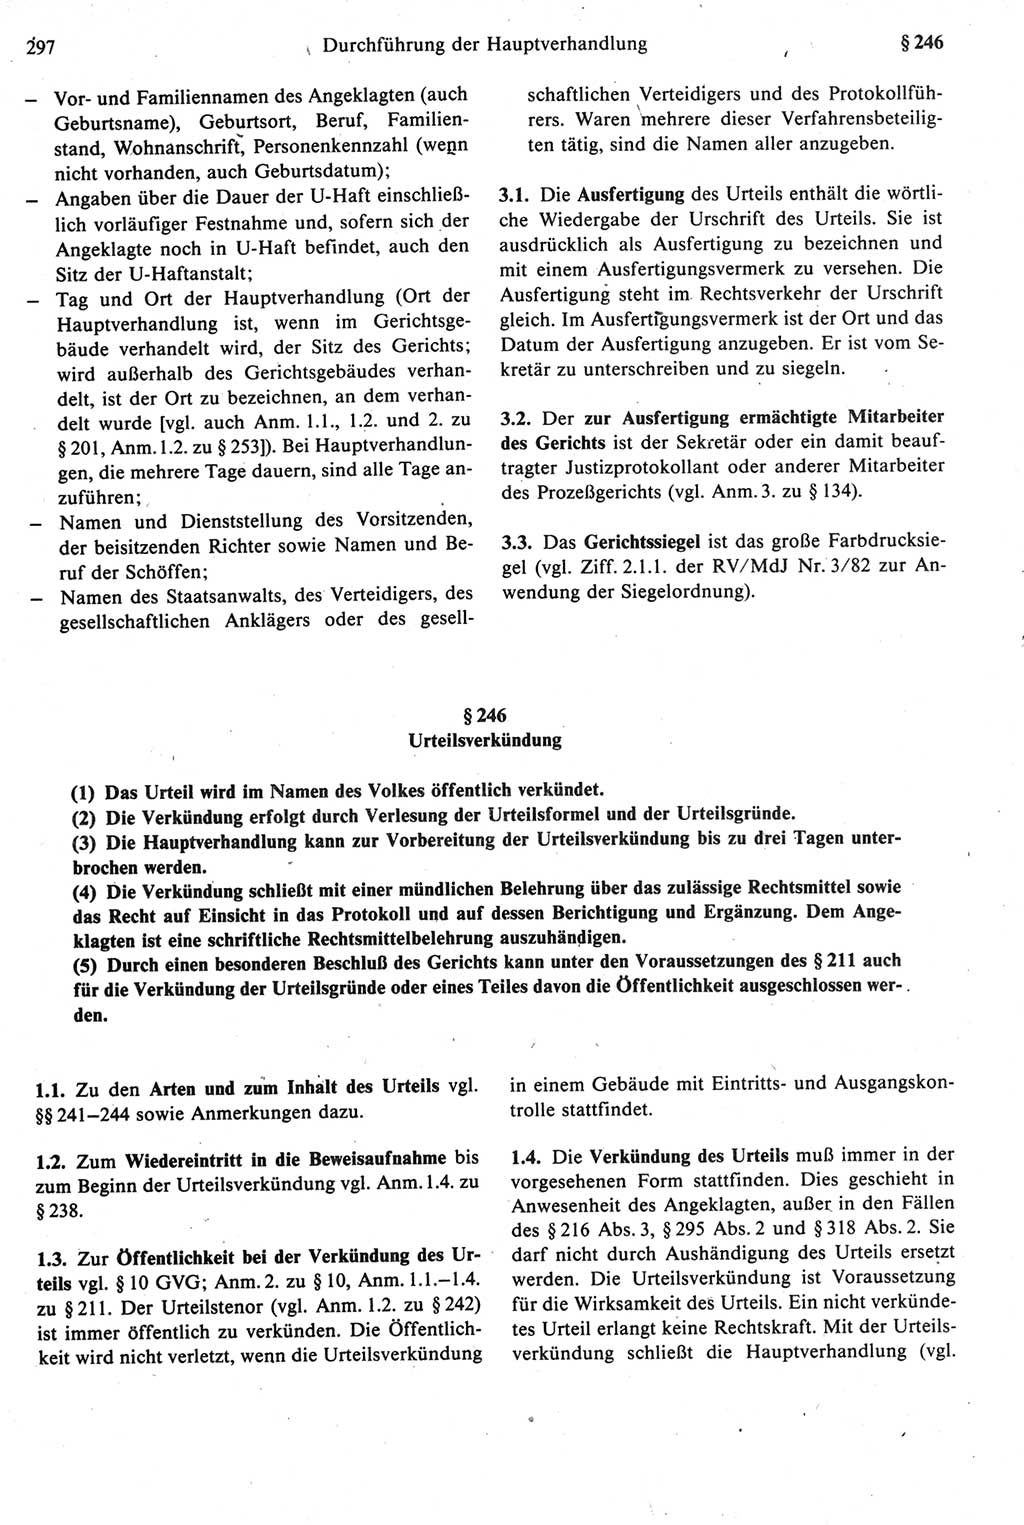 Strafprozeßrecht der DDR [Deutsche Demokratische Republik], Kommentar zur Strafprozeßordnung (StPO) 1987, Seite 297 (Strafprozeßr. DDR Komm. StPO 1987, S. 297)